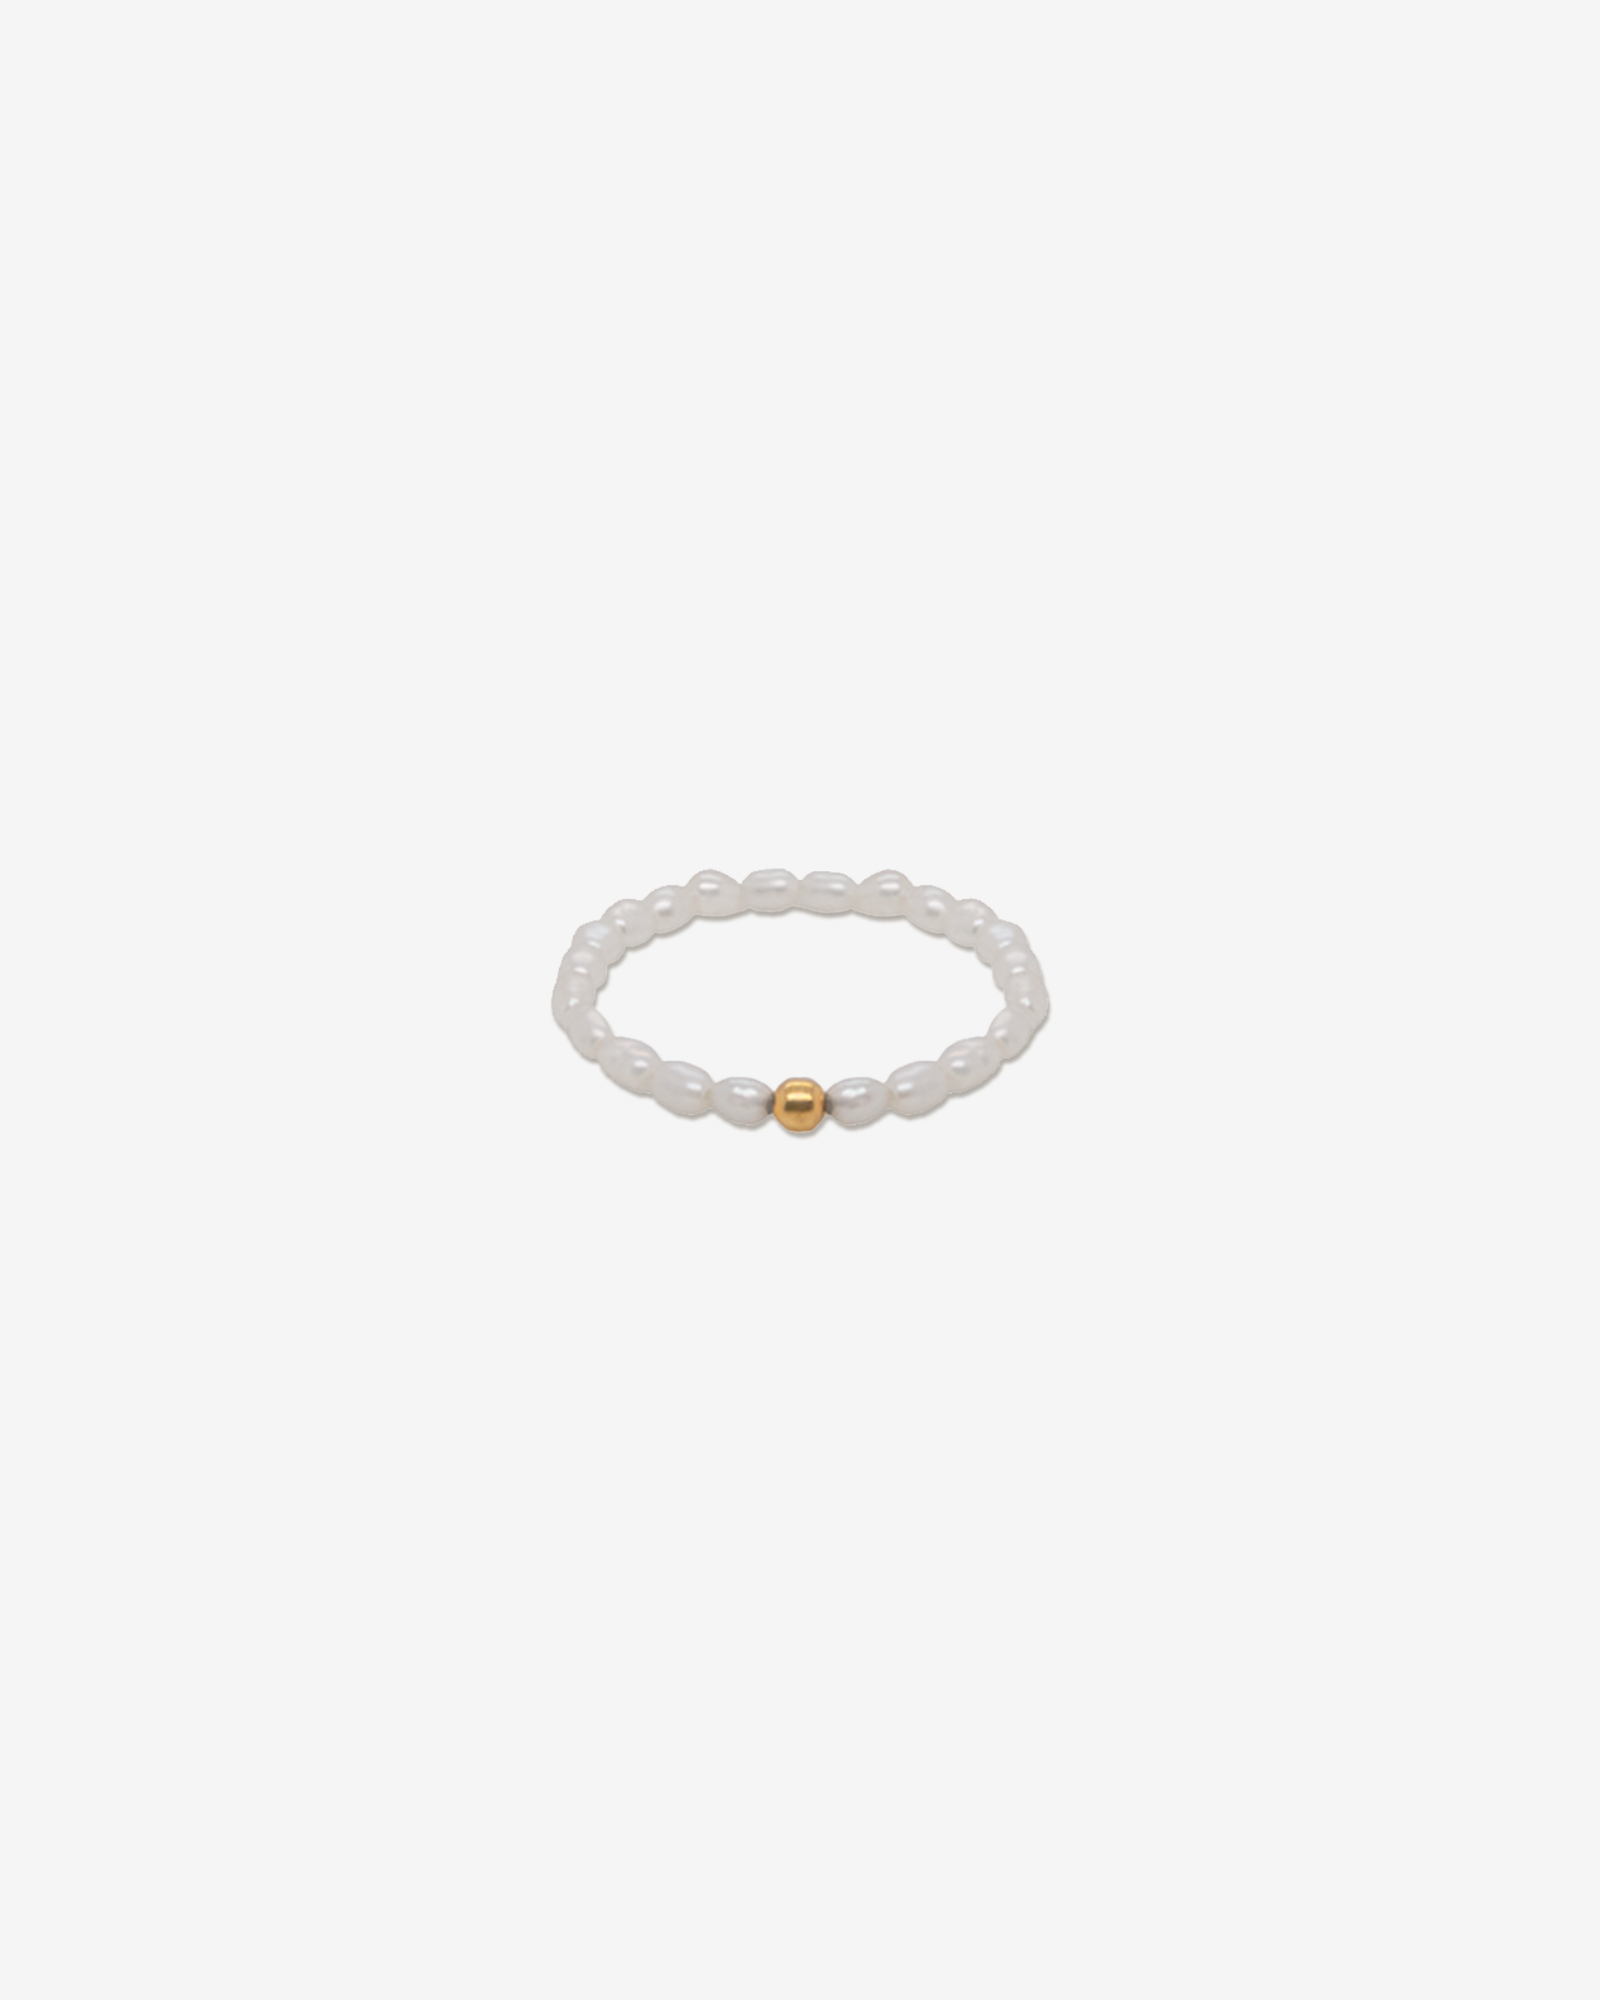 Aino – Perlen Ring